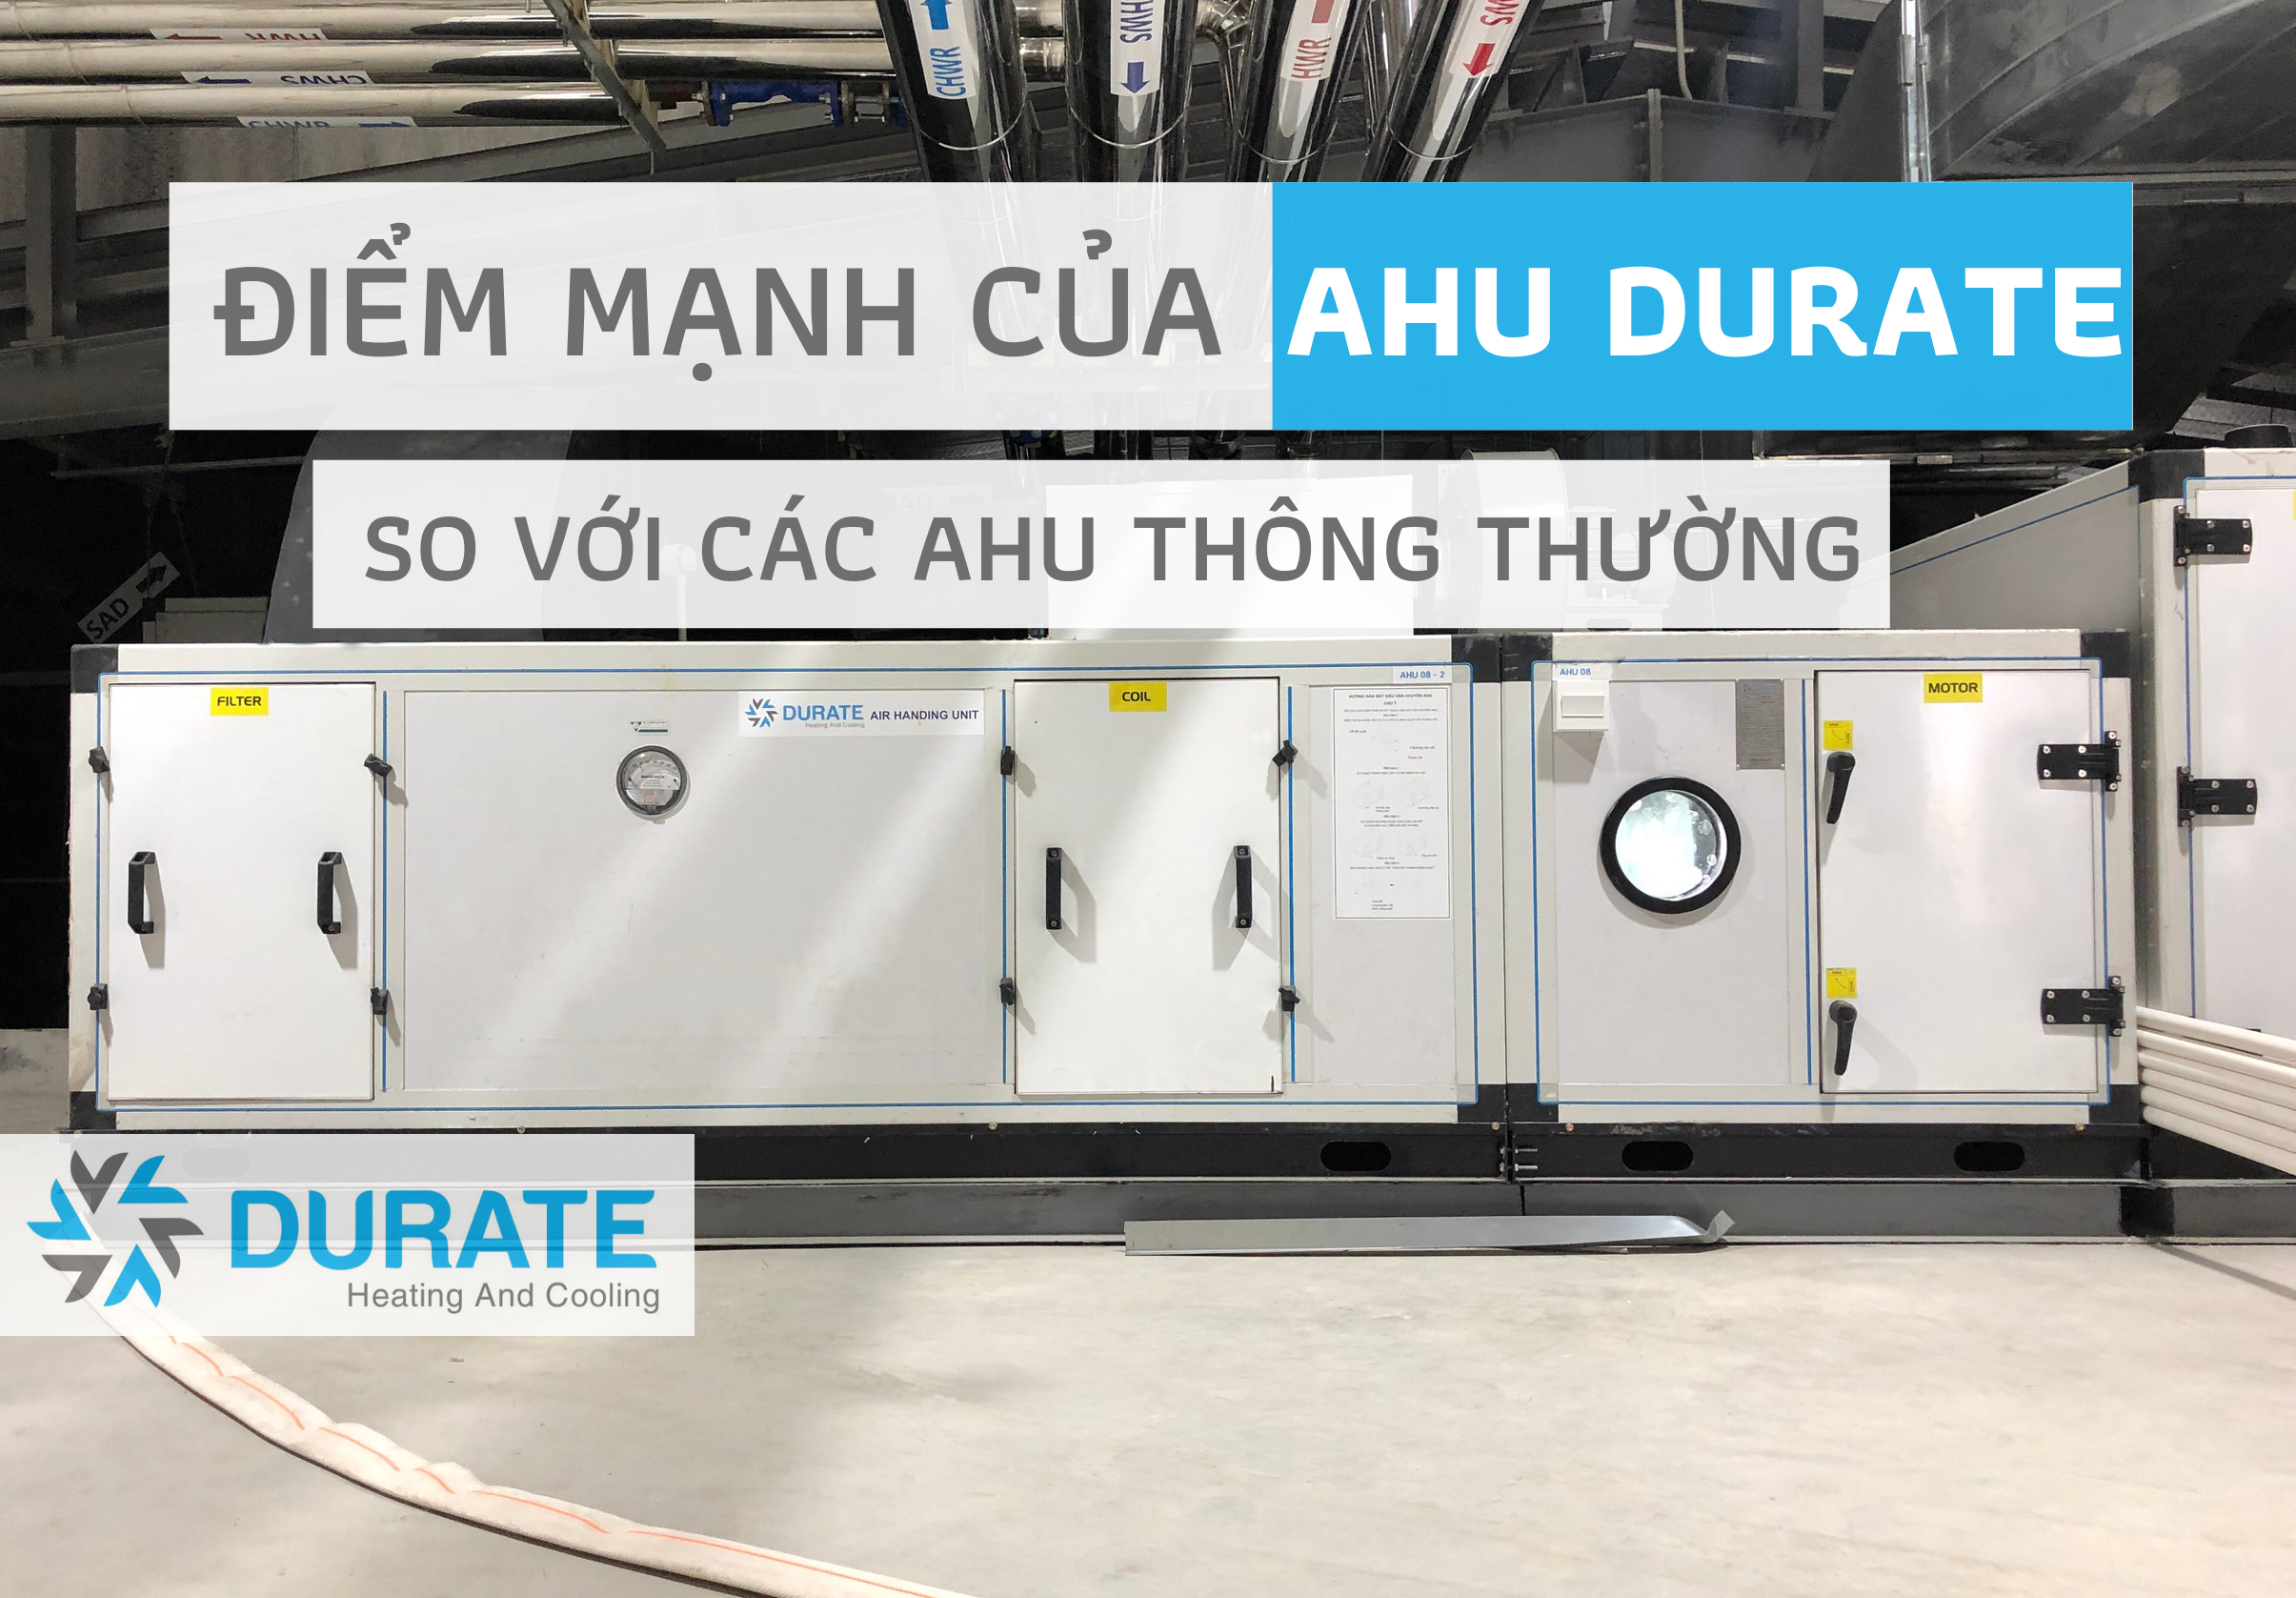 Điểm mạnh của AHU Durate so với các AHU thông thường